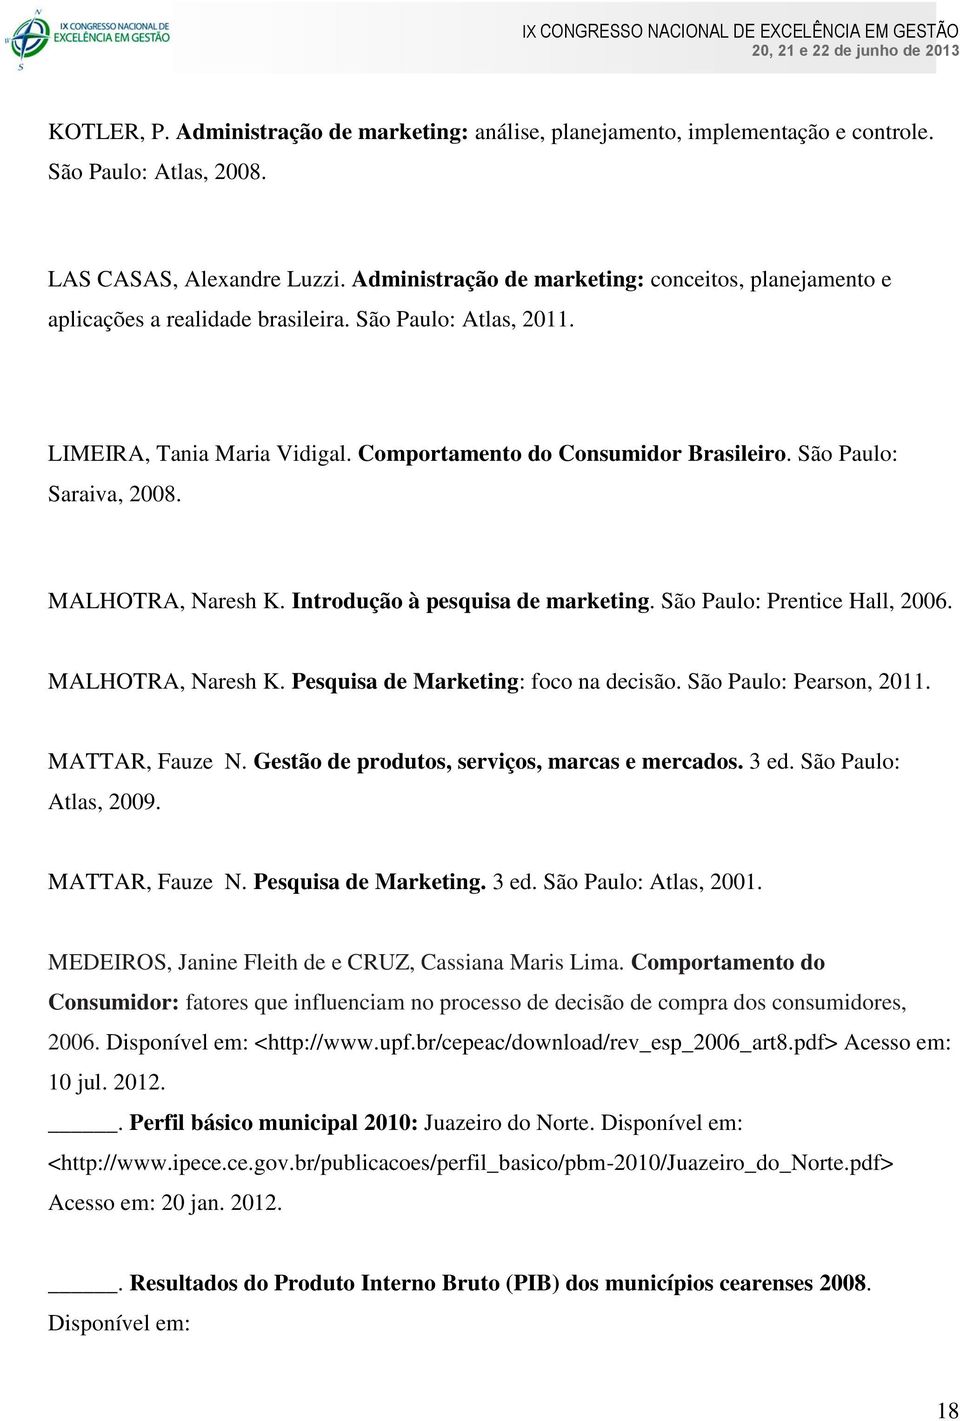 São Paulo: Saraiva, 2008. MALHOTRA, Naresh K. Introdução à pesquisa de marketing. São Paulo: Prentice Hall, 2006. MALHOTRA, Naresh K. Pesquisa de Marketing: foco na decisão. São Paulo: Pearson, 2011.